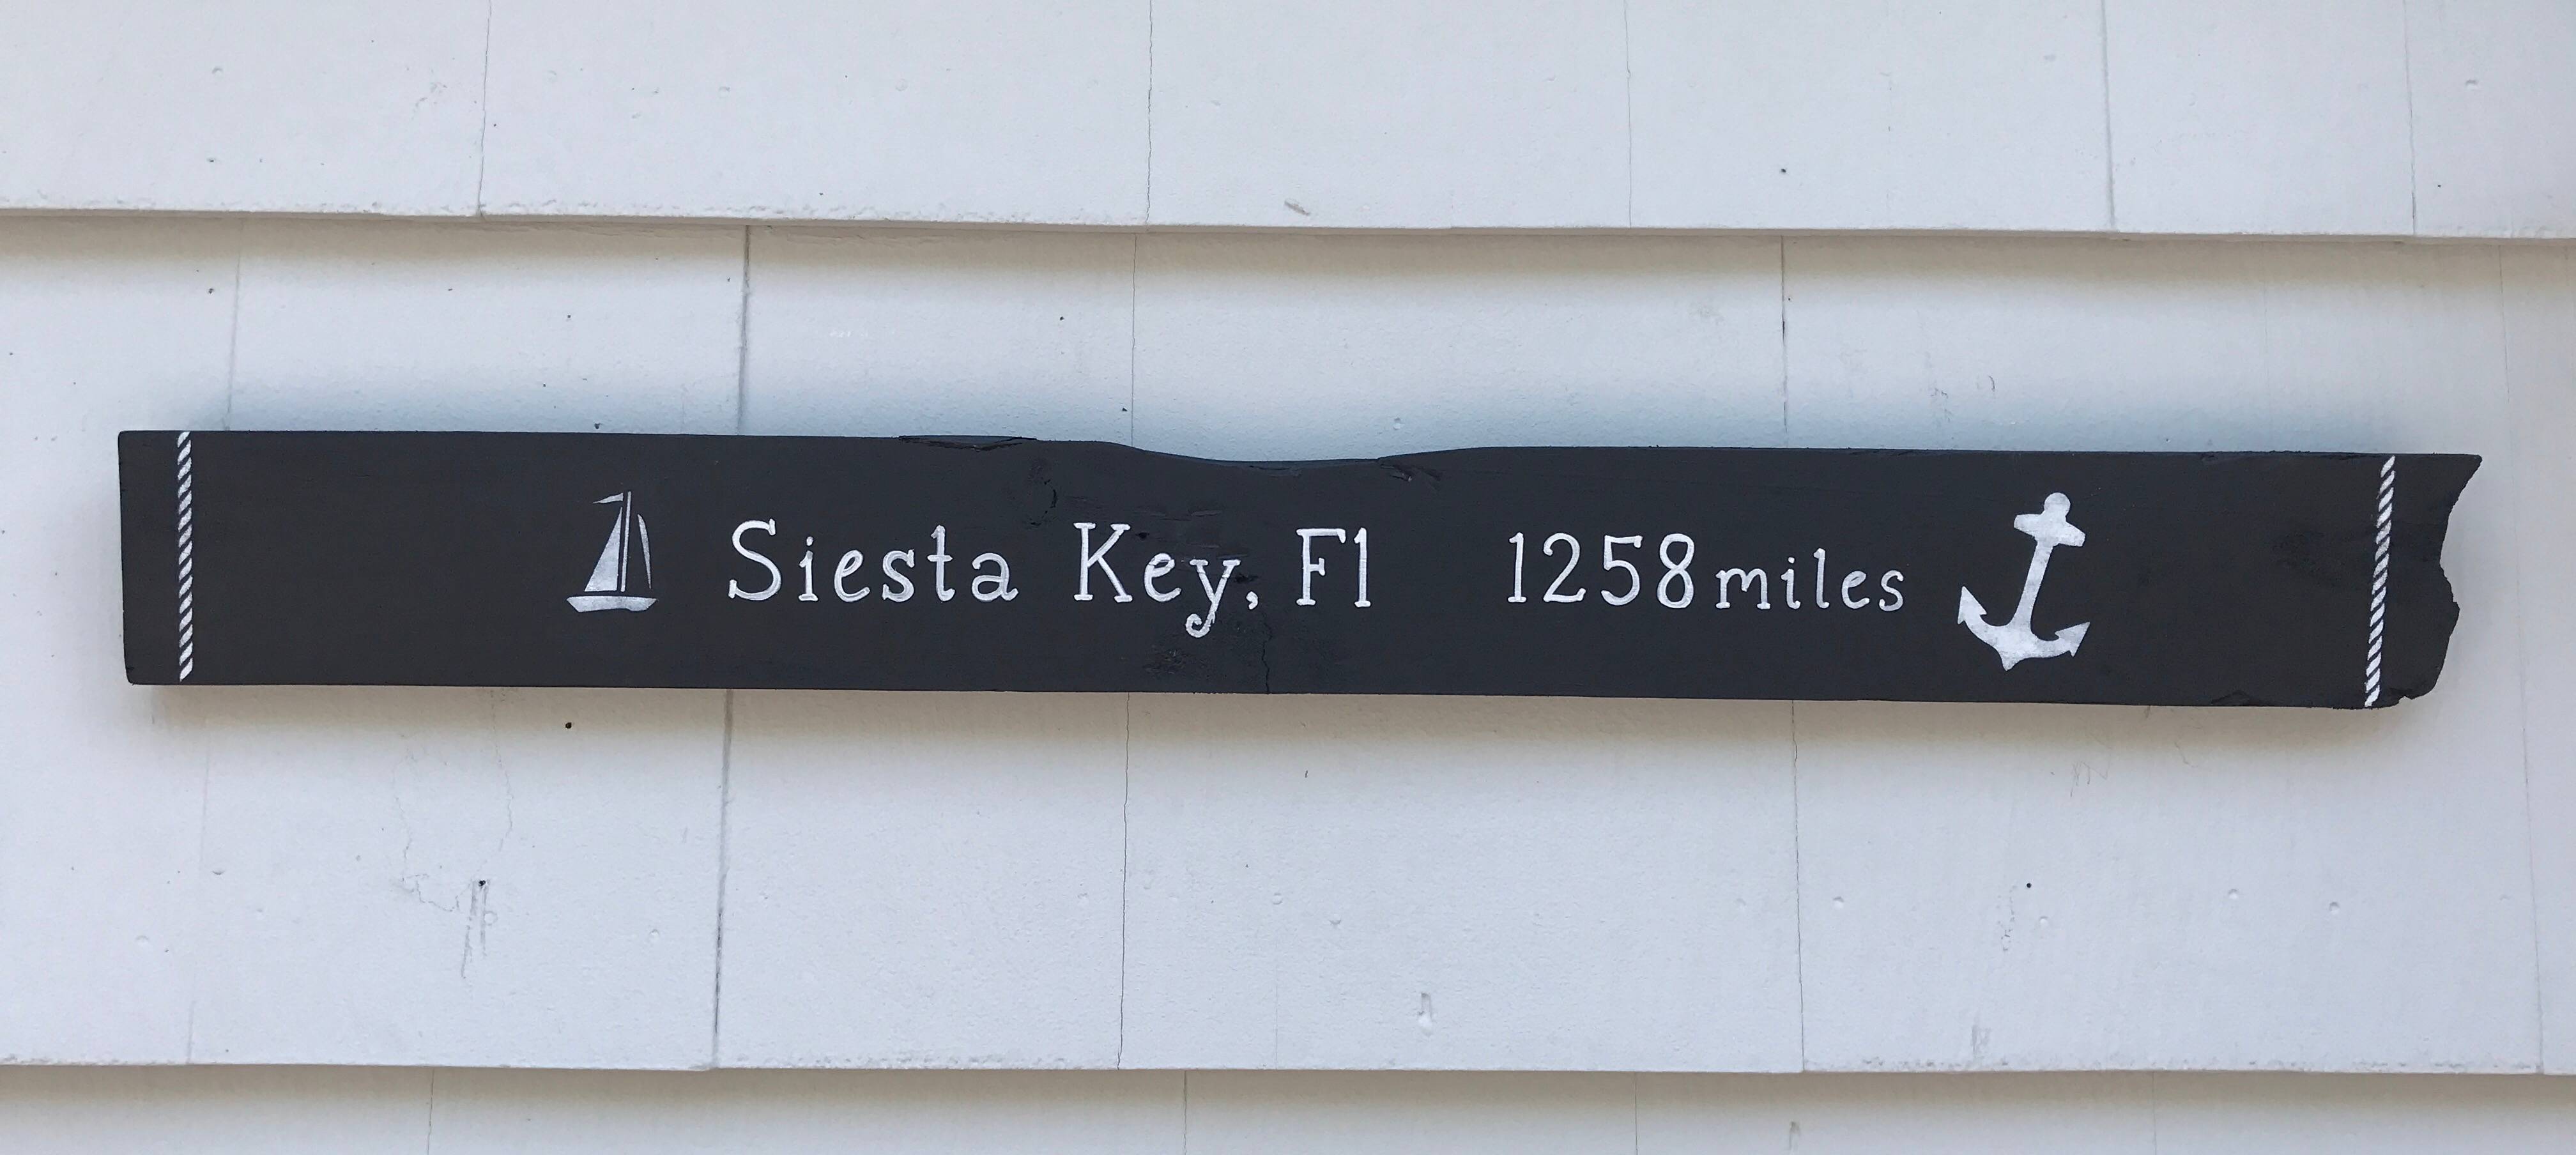 Siesta Key, FL